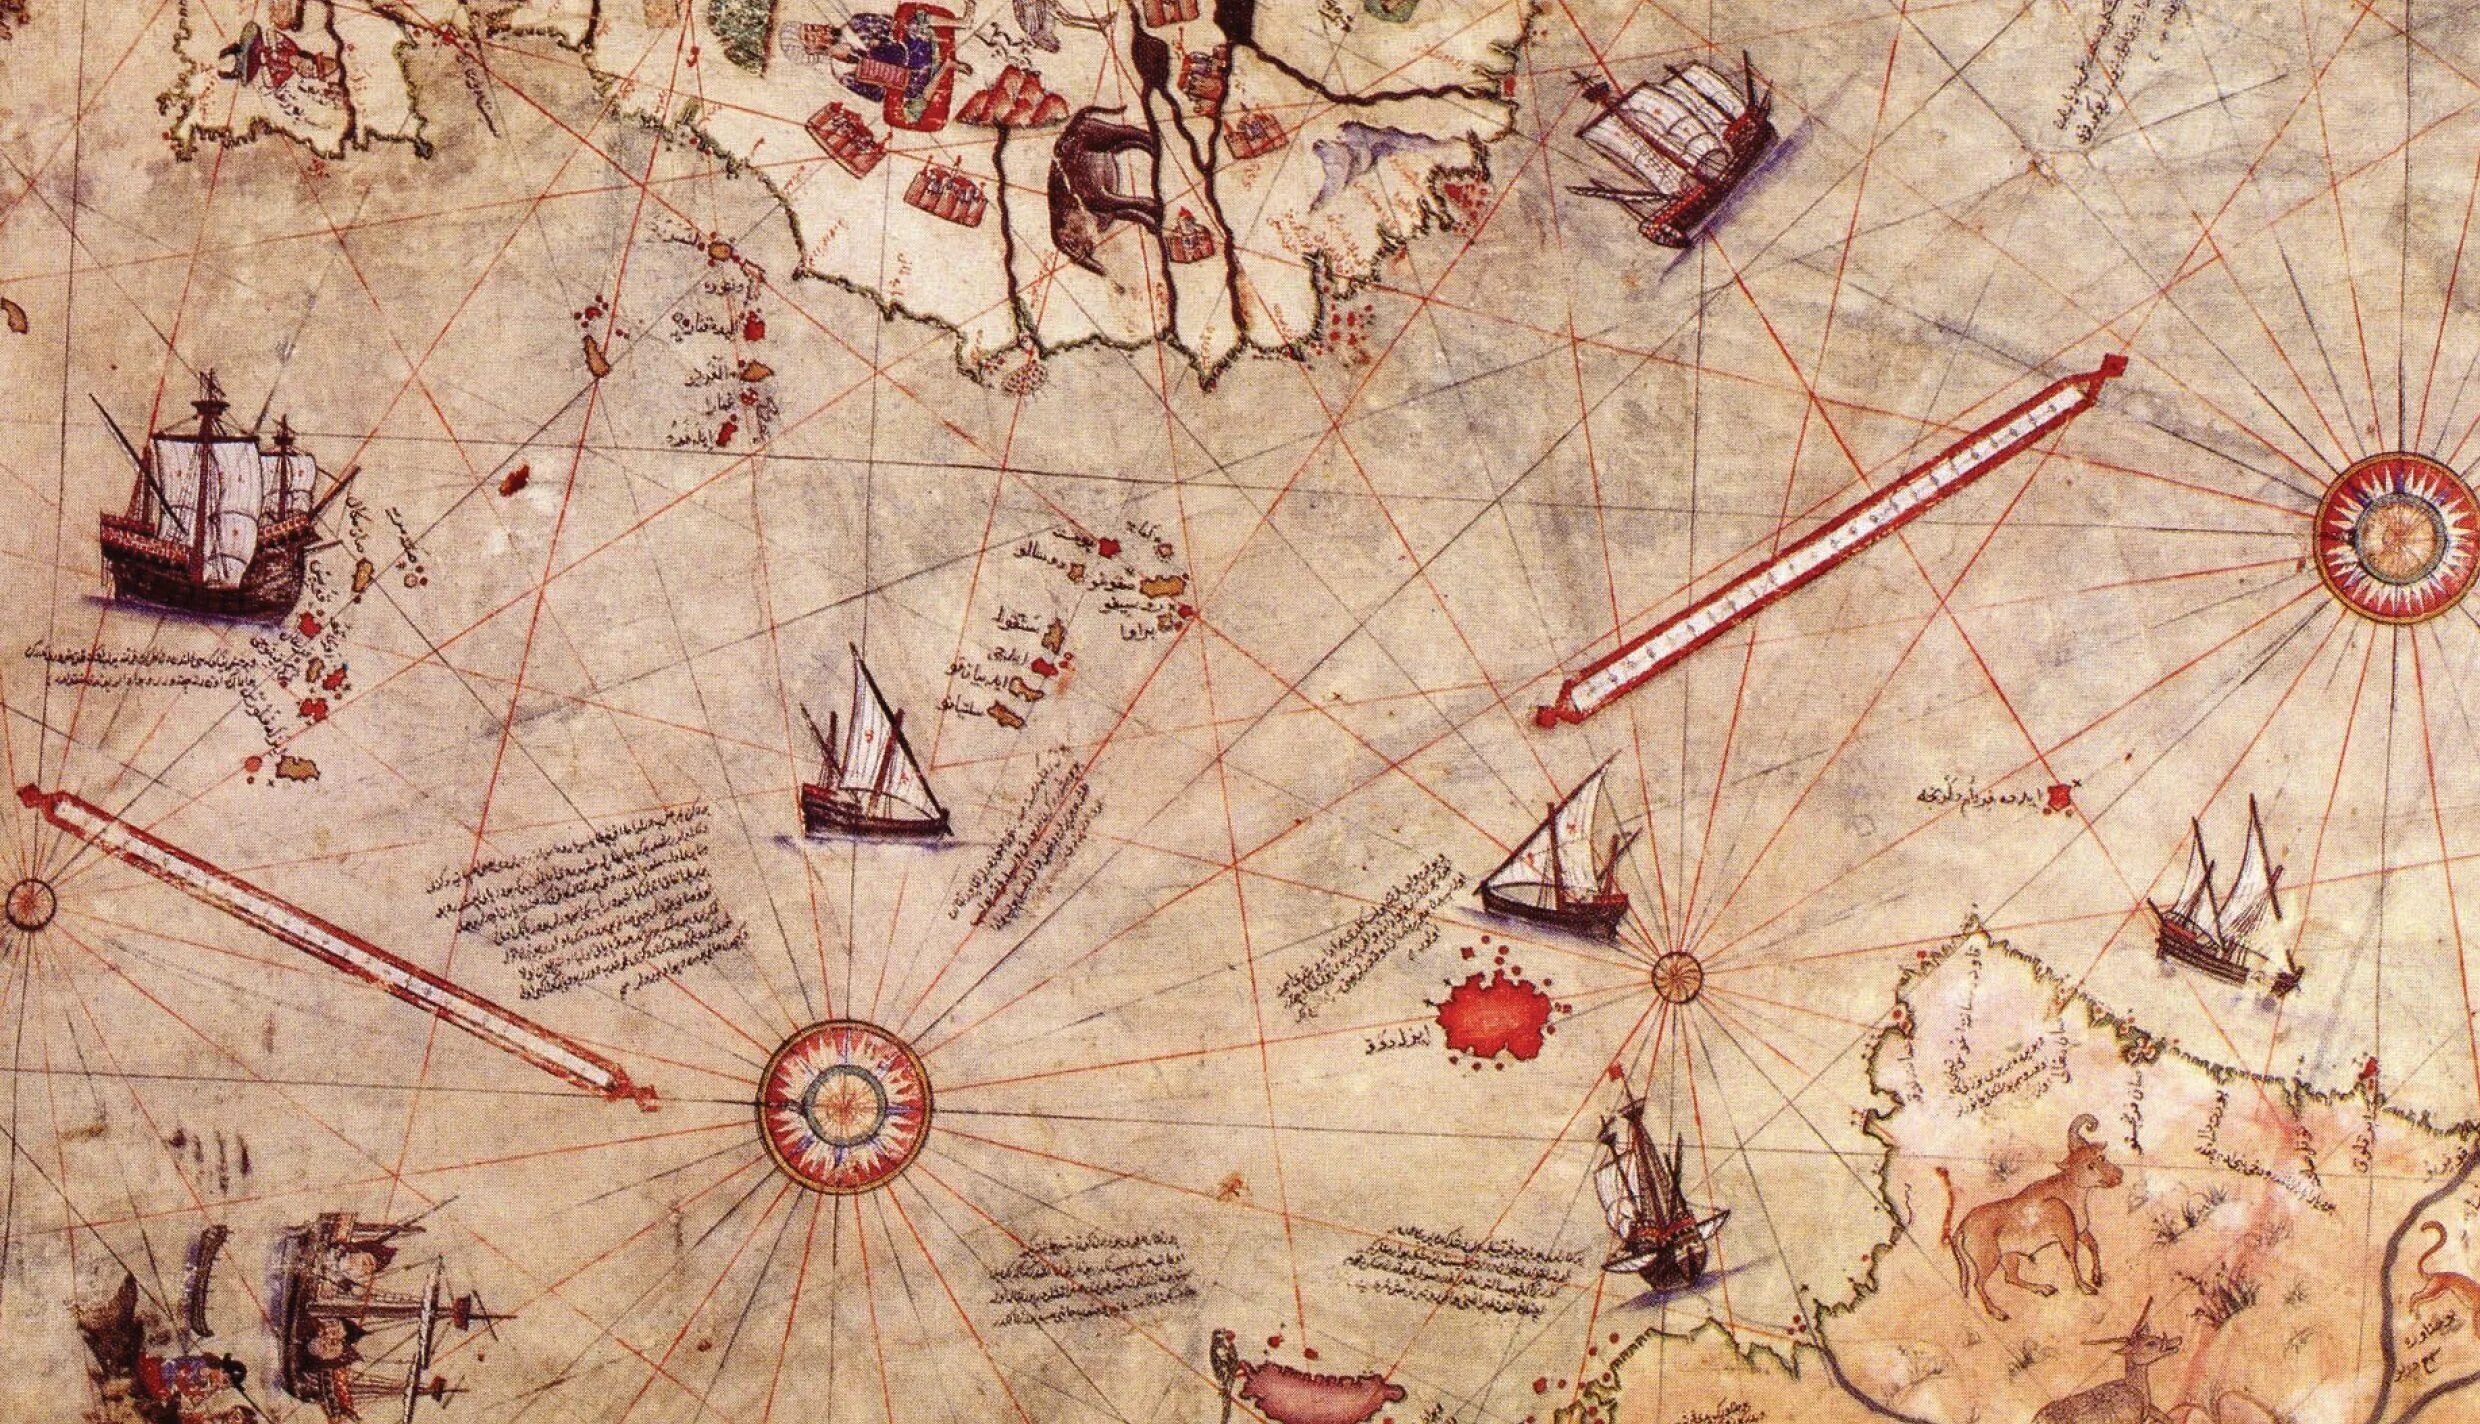 Карта Пири рейса Антарктида. Карта Пири рейса 1513. Карта турецкого мореплавателя Пири рейса. Карта Пири рейса в высоком разрешении.